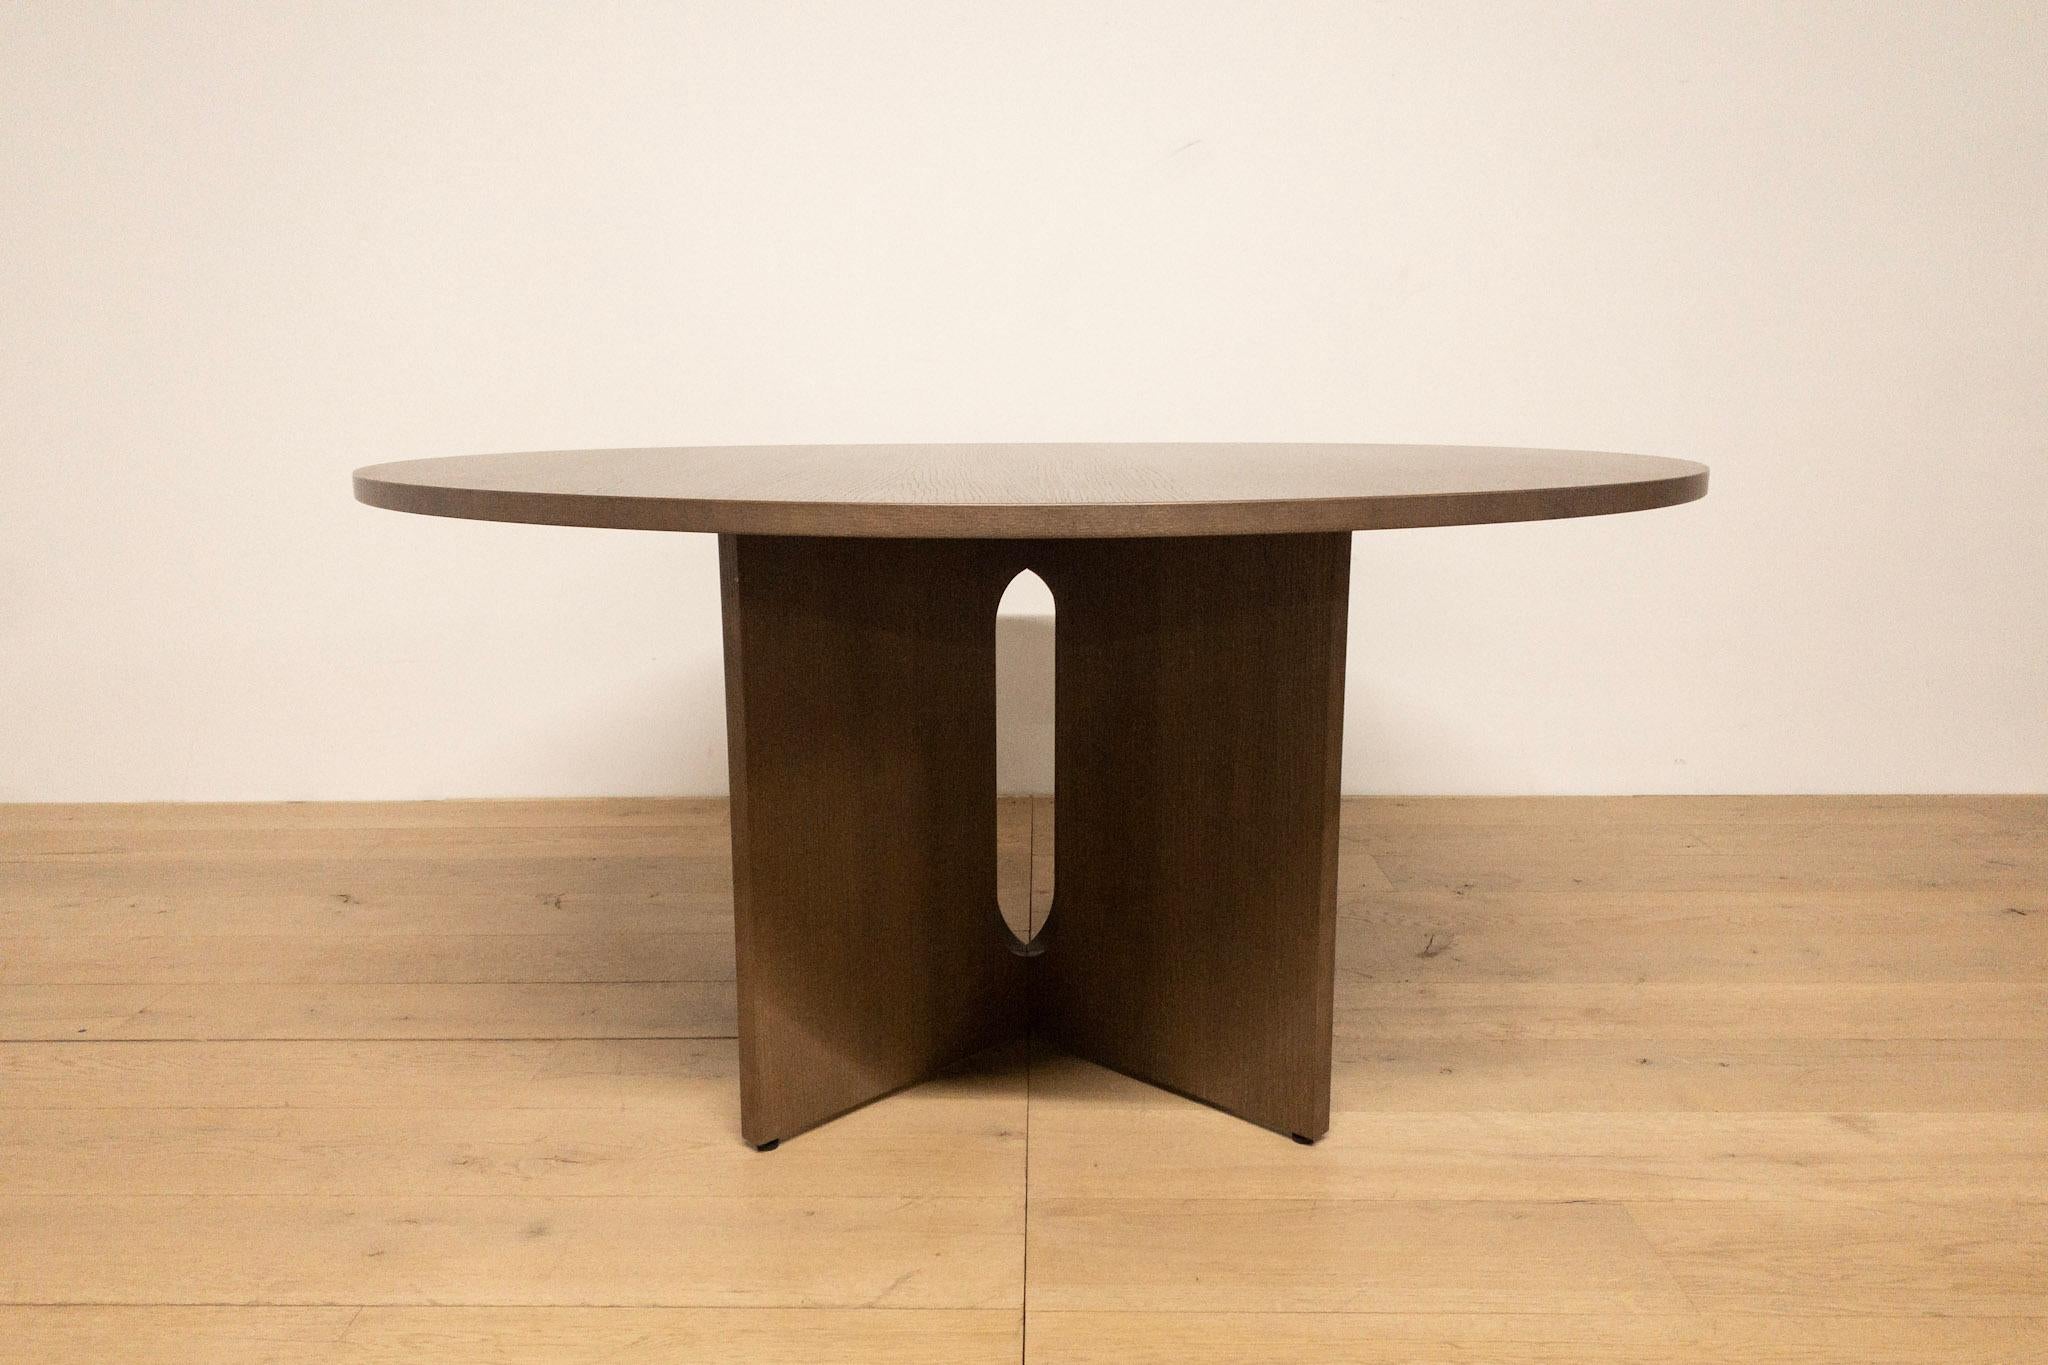 Cette table de salle à manger ronde se distingue par son design scandinave et sa silhouette élégante utilisant des matériaux naturels comme le chêne pour composer la base sculpturale. Invention de l'architecte et designer norvégienne Danielle